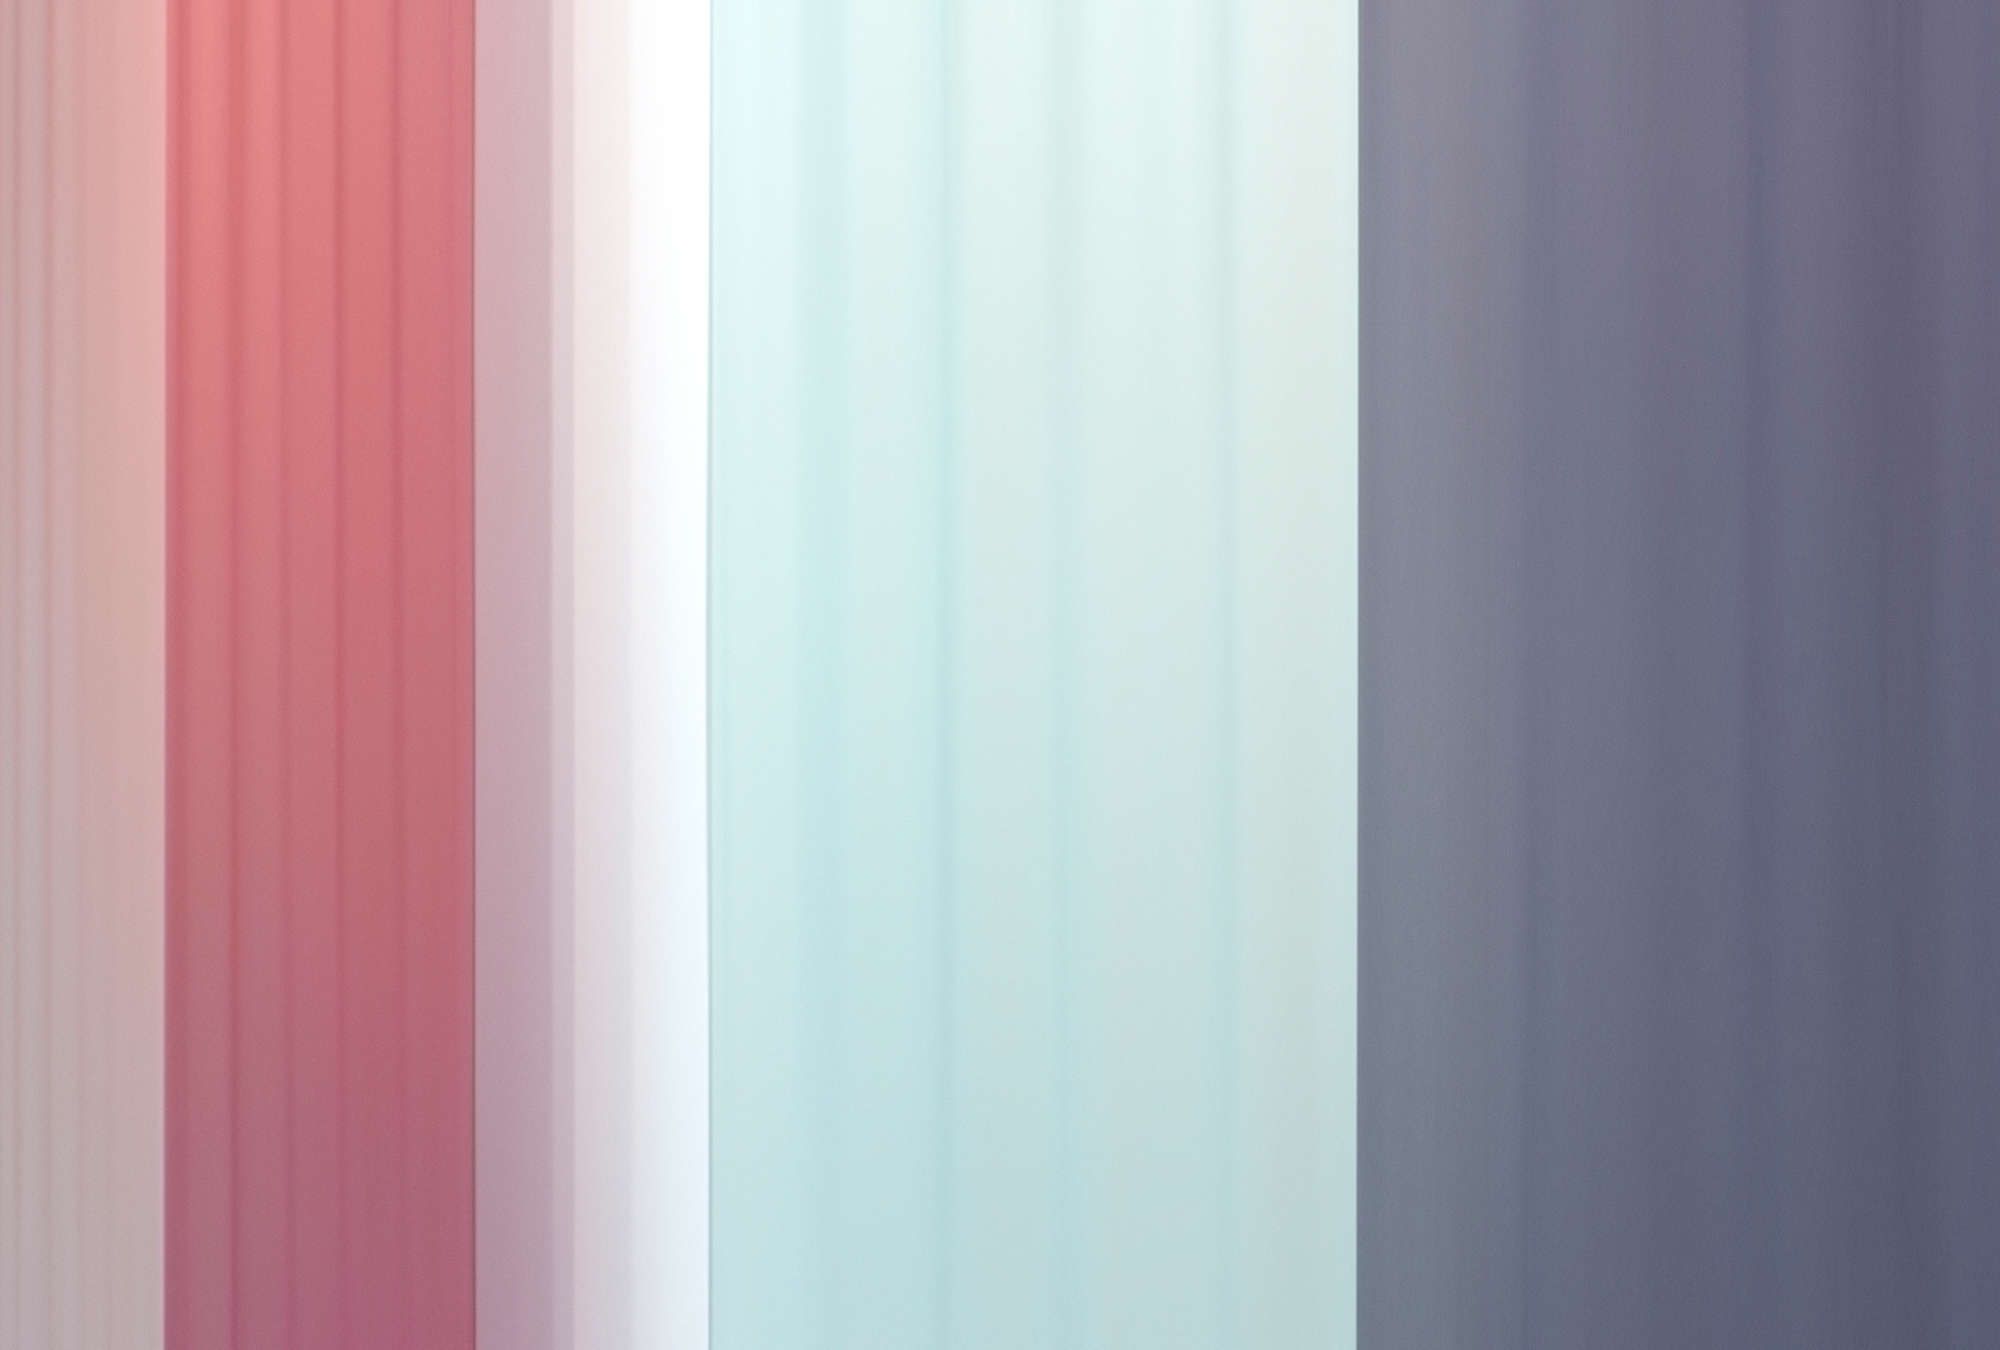             Fotomural »co-colores 2« - Degradado de colores con rayas - Rosa, azul claro azul oscuro | Material sin tejer liso, ligeramente nacarado y brillante
        